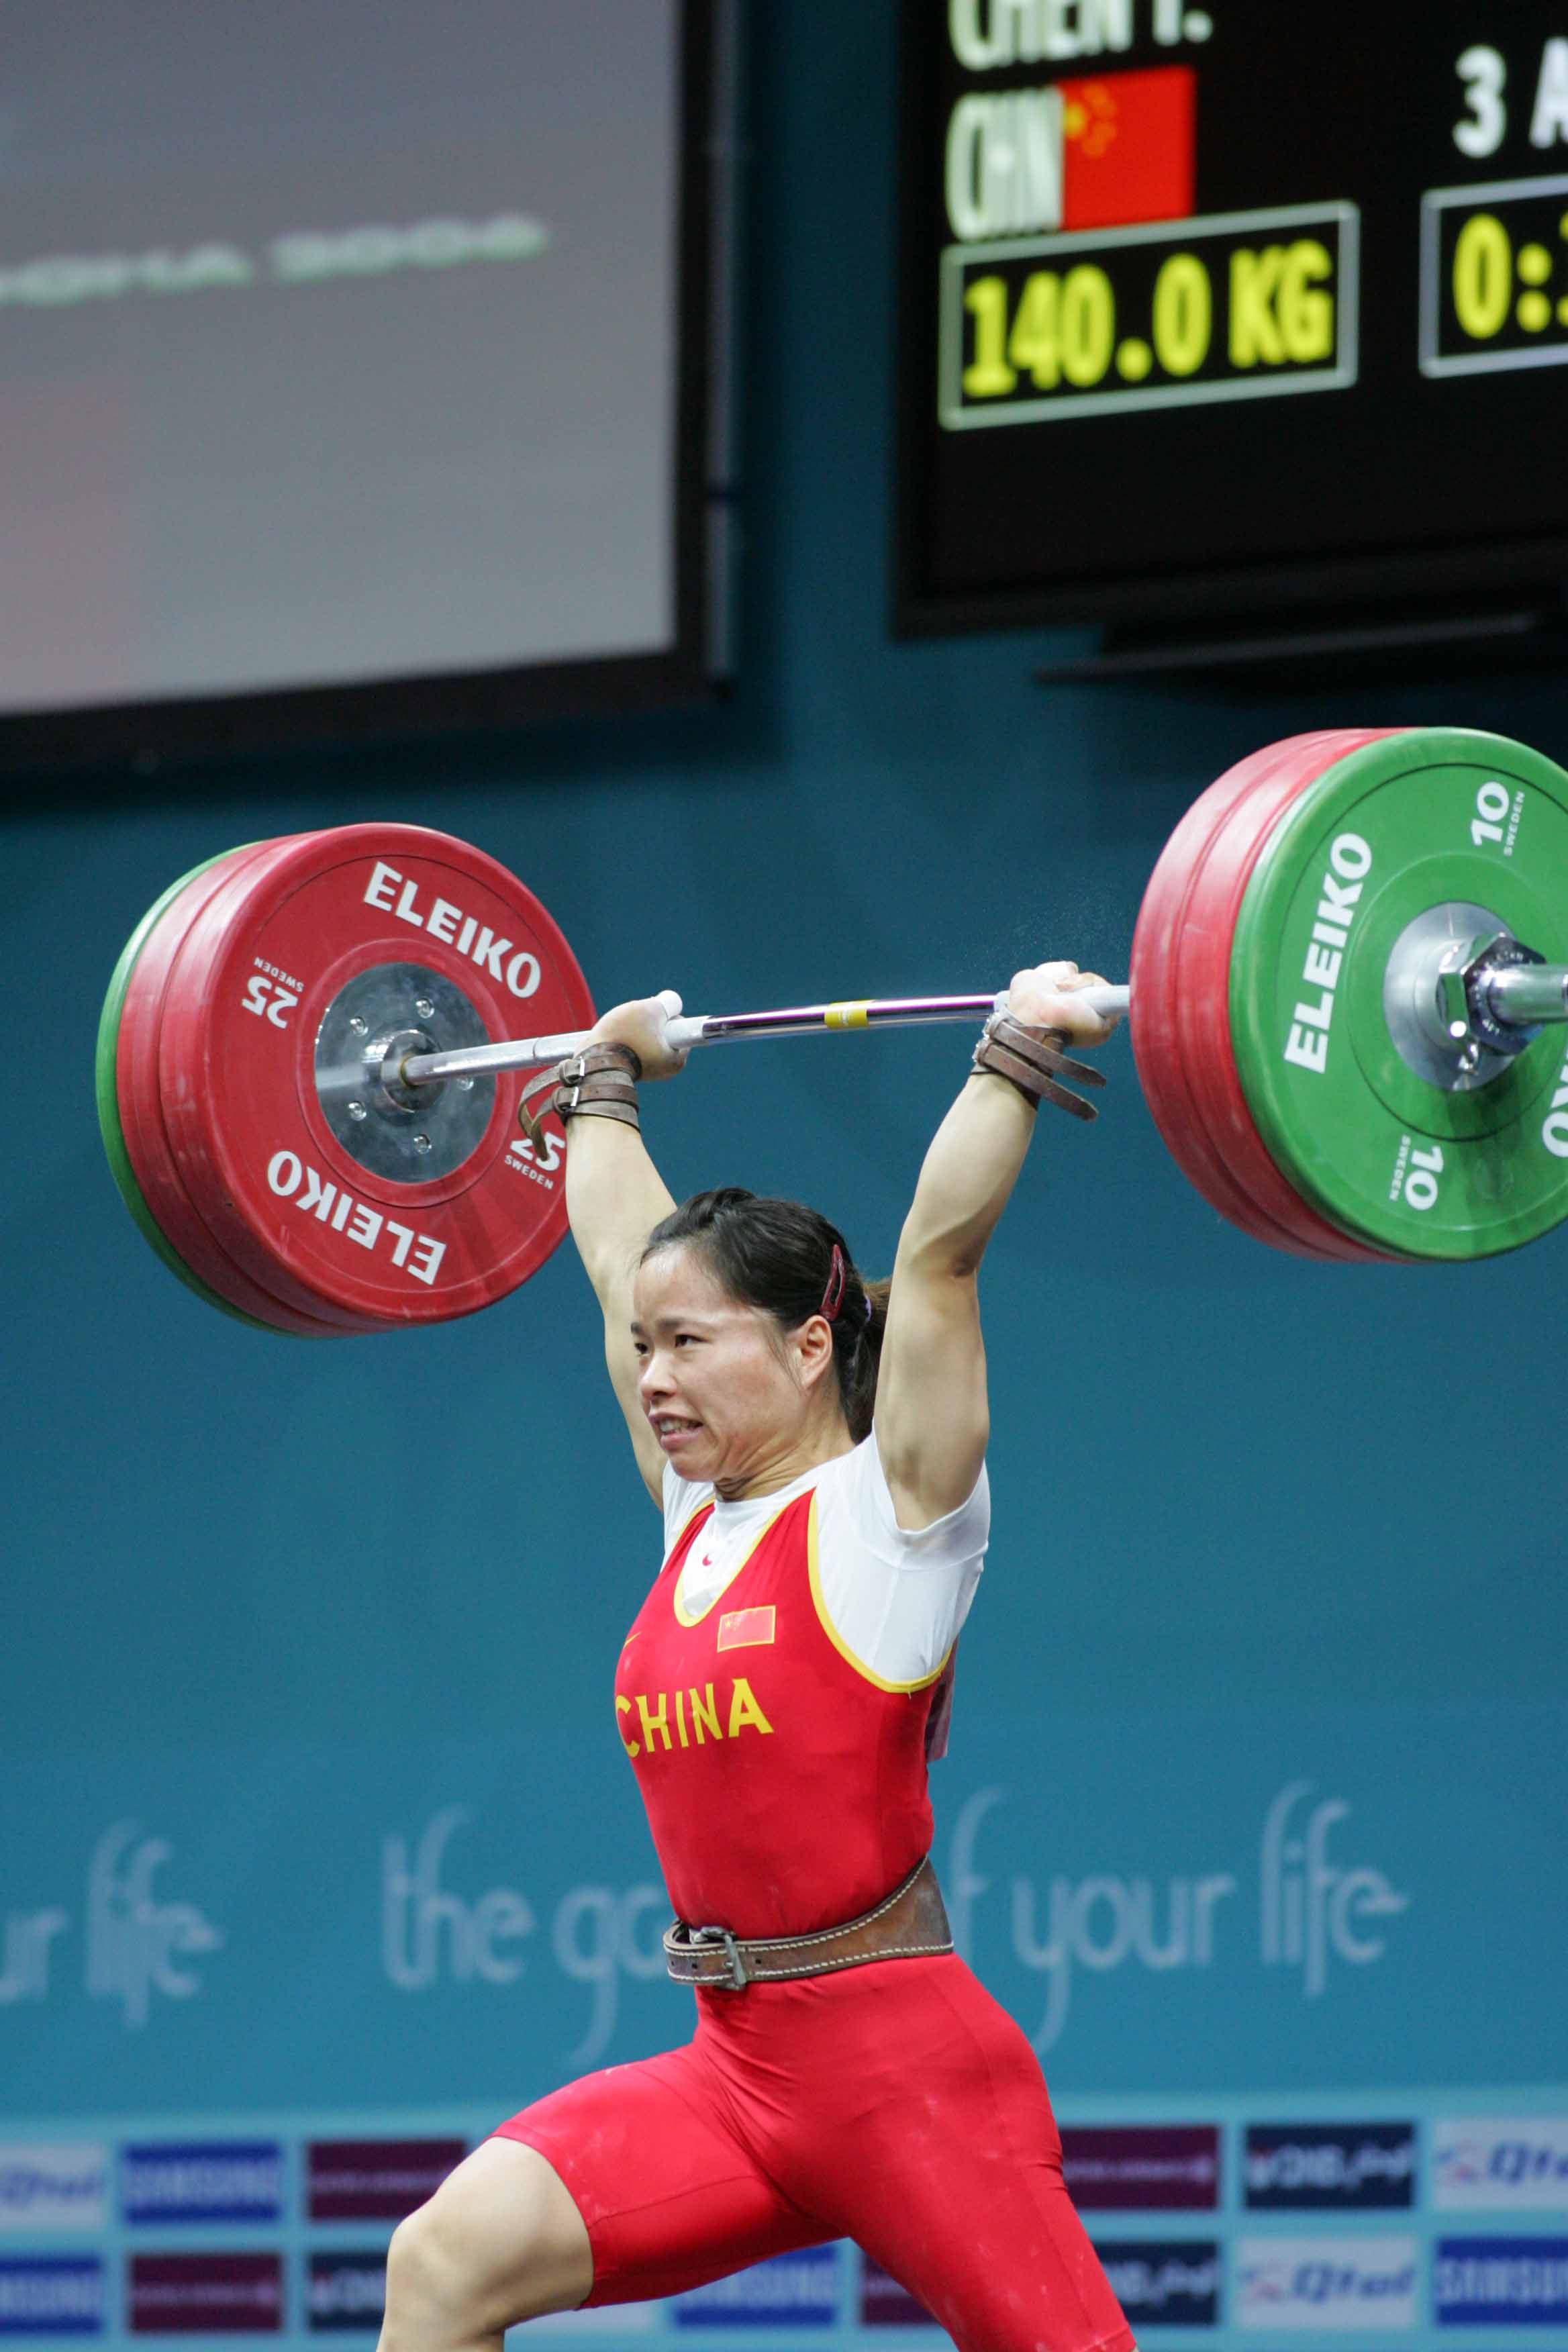 女子63kg级举重获得冠军 刘霞轻松举起杠铃(图)